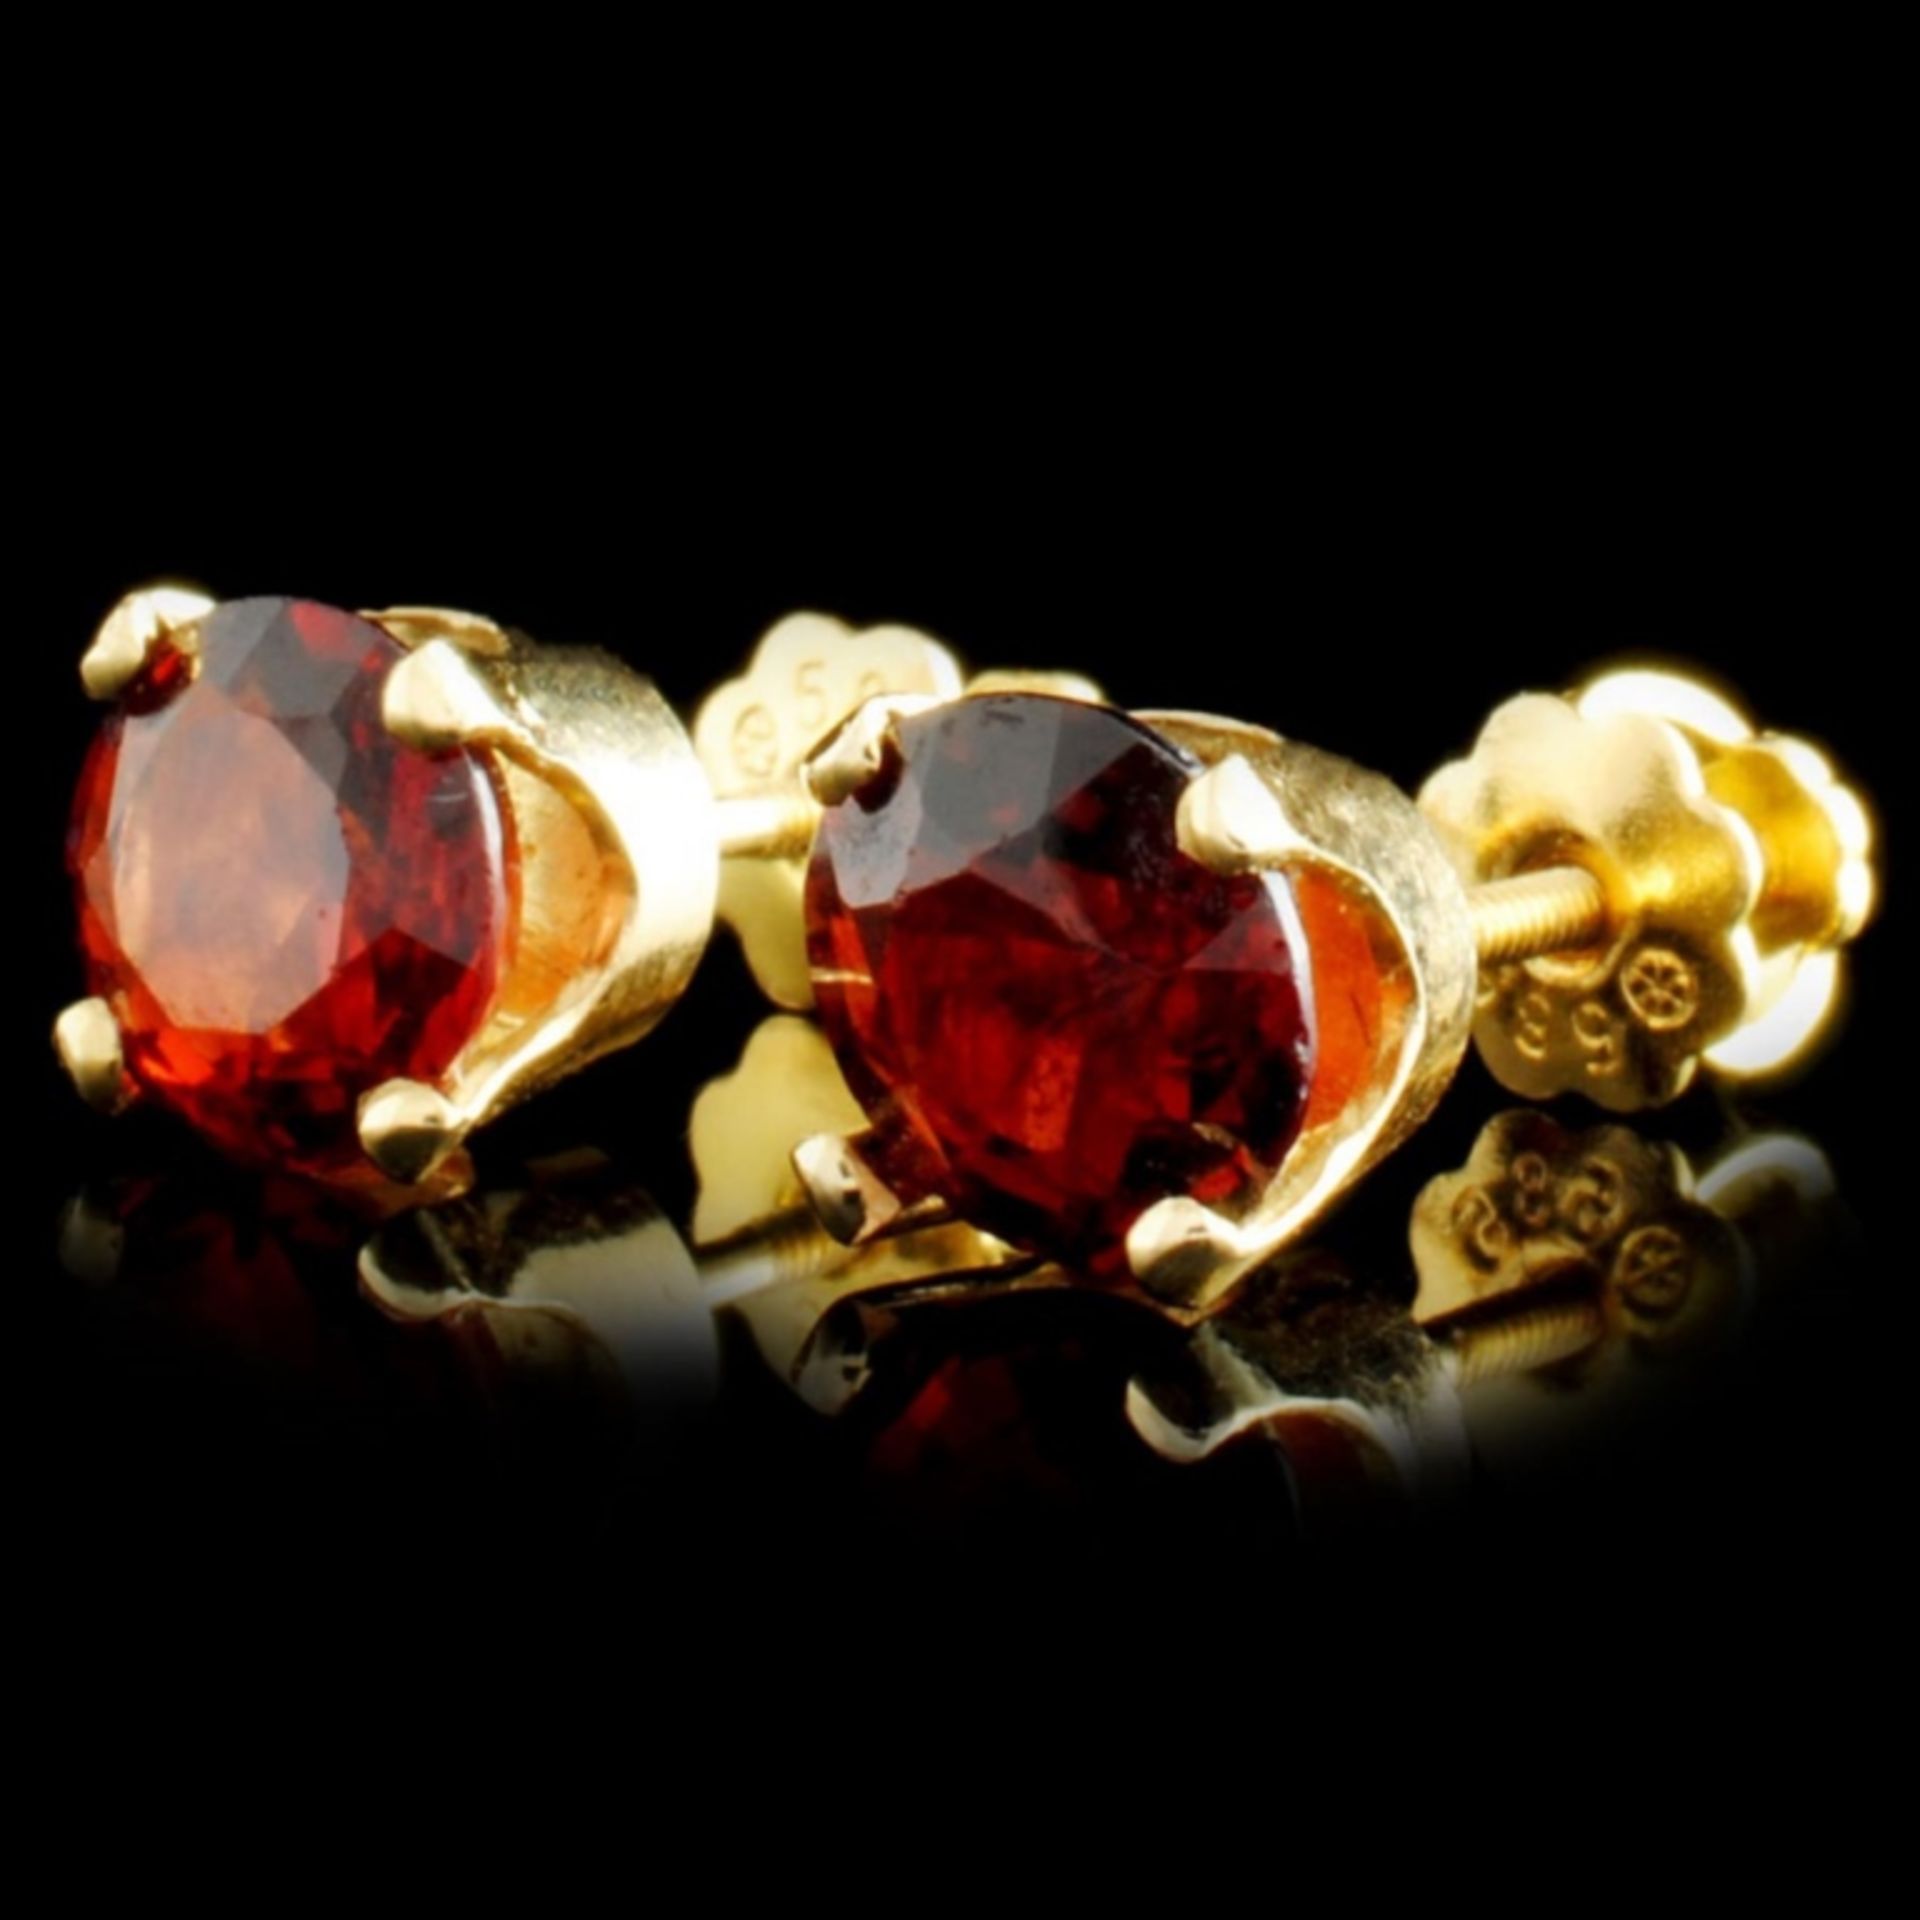 14K Gold 2.24ct Garnet Earrings - Image 2 of 3